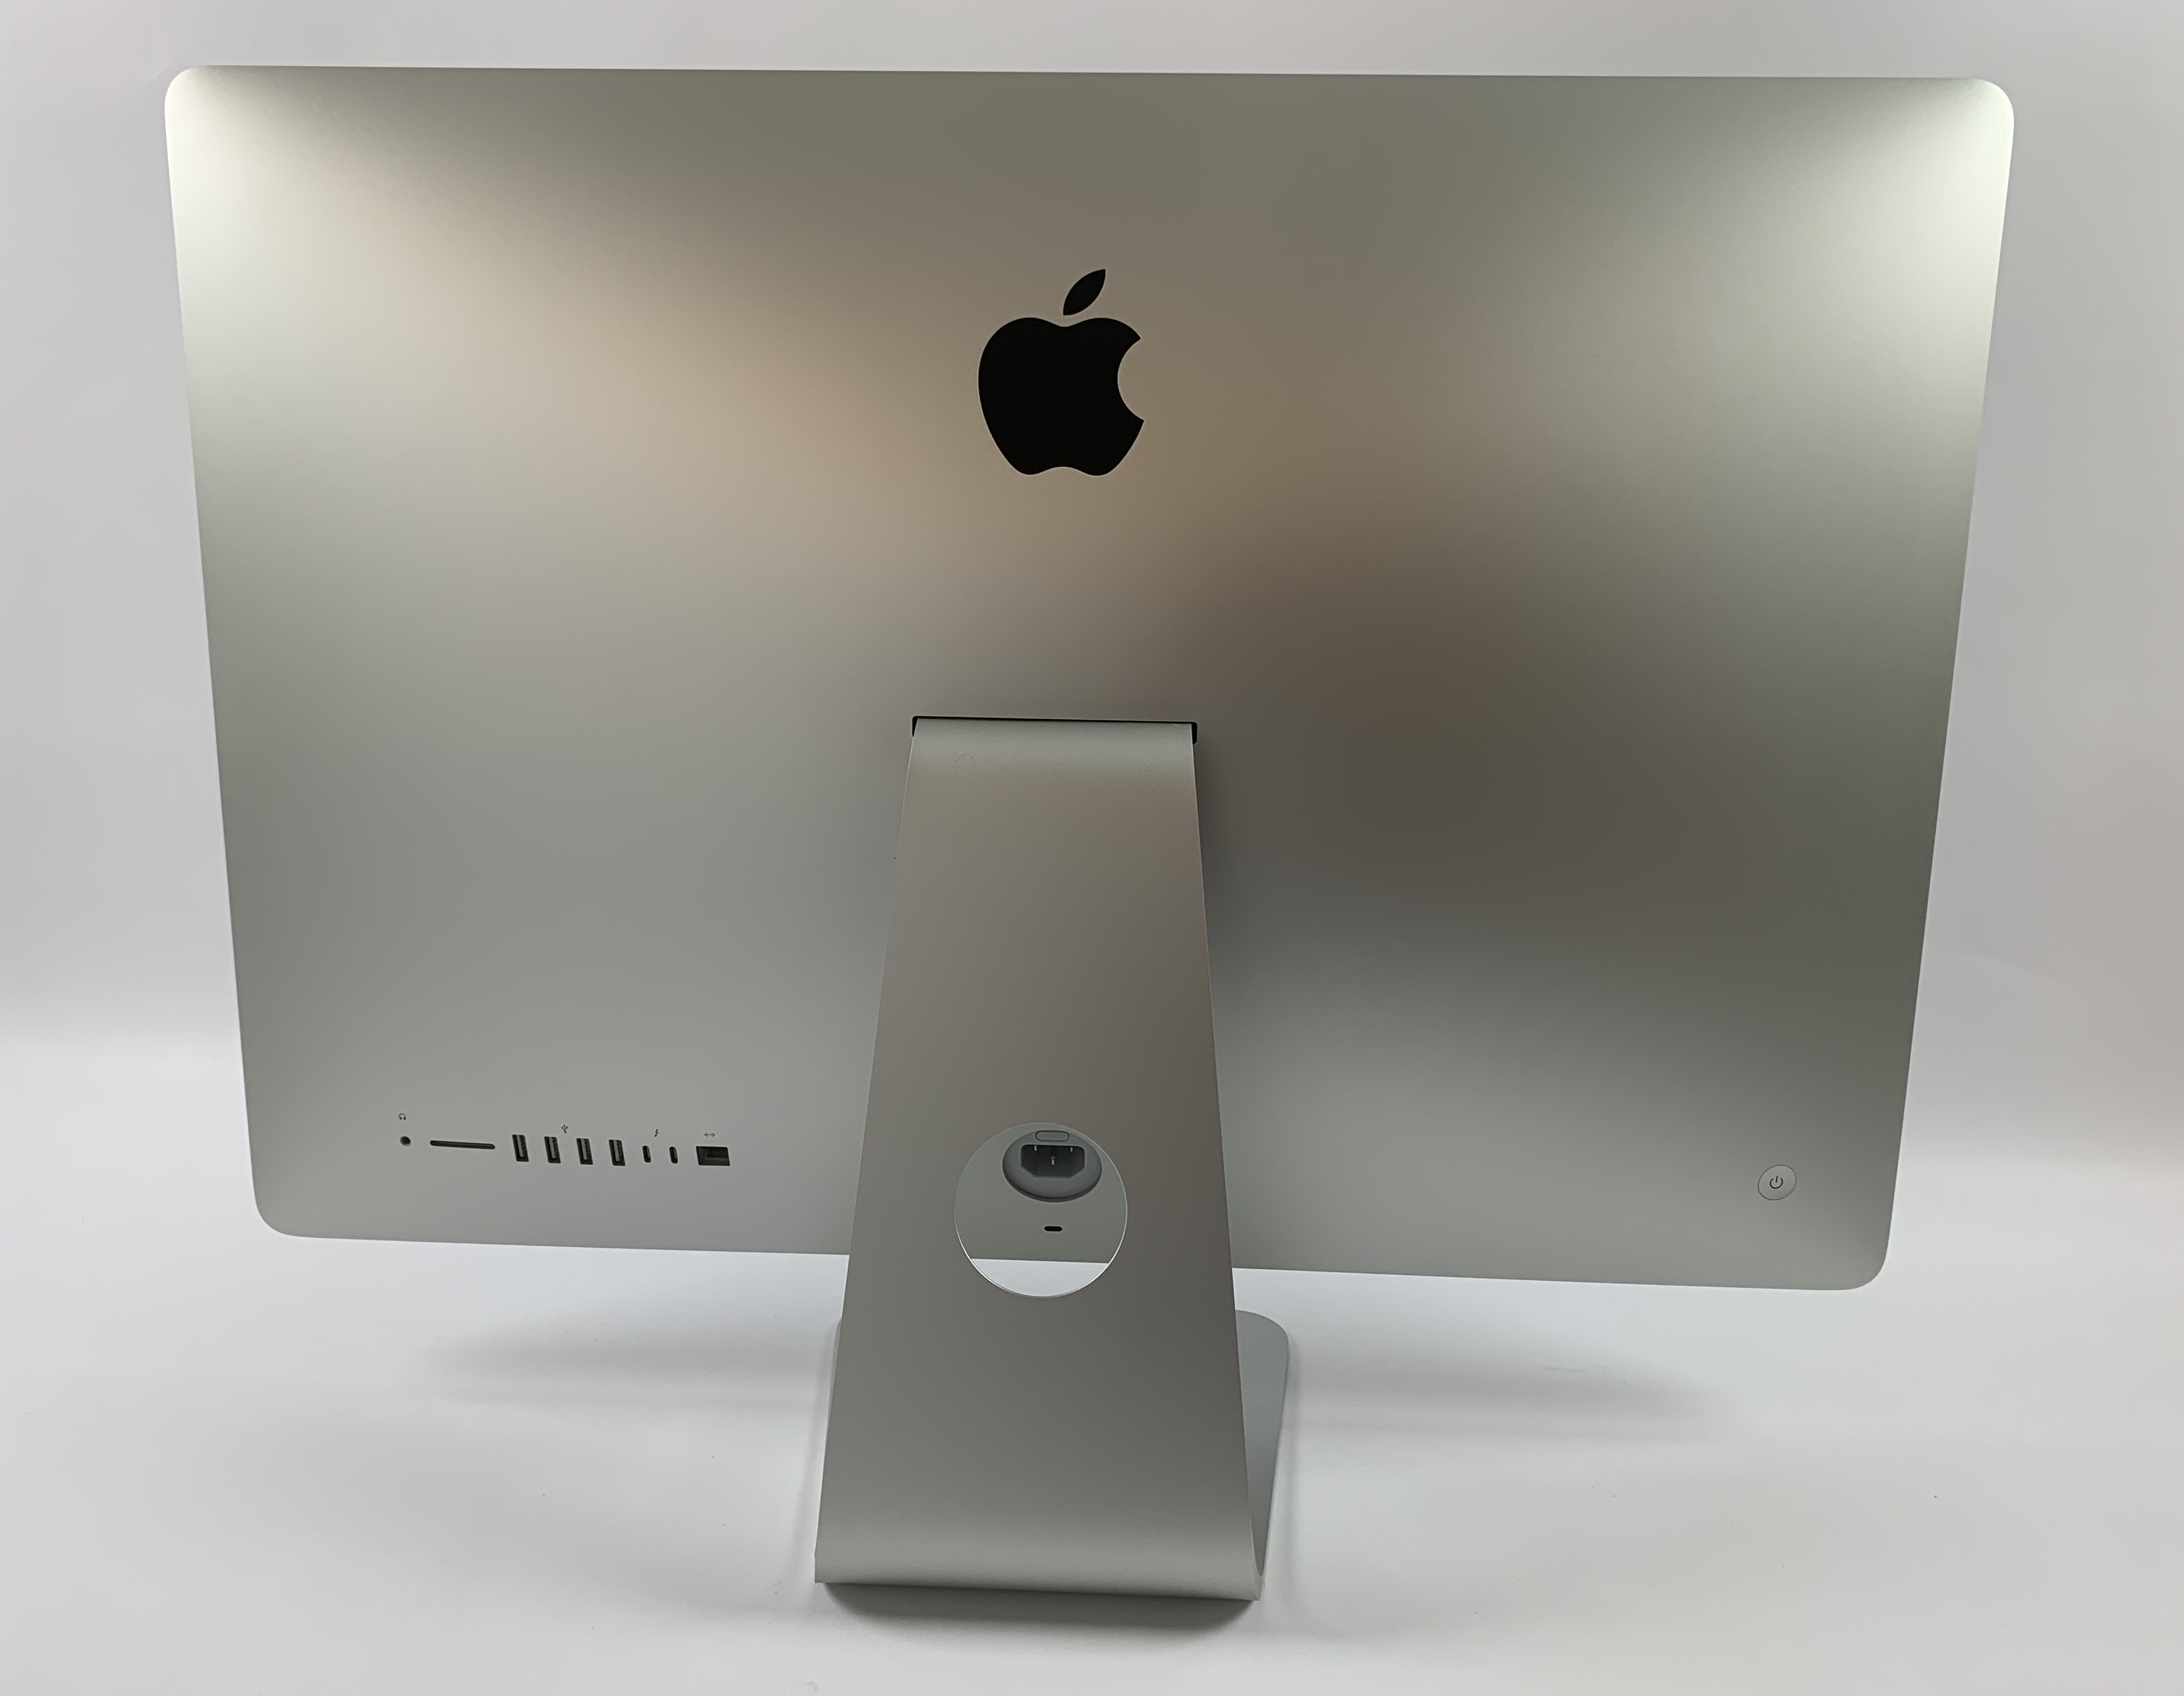 iMac 27" Retina 5K Mid 2020 (Intel 6-Core i5 3.1 GHz 128 GB RAM 256 GB SSD), Intel 6-Core i5 3.1 GHz, 128 GB RAM, 256 GB SSD, Afbeelding 2